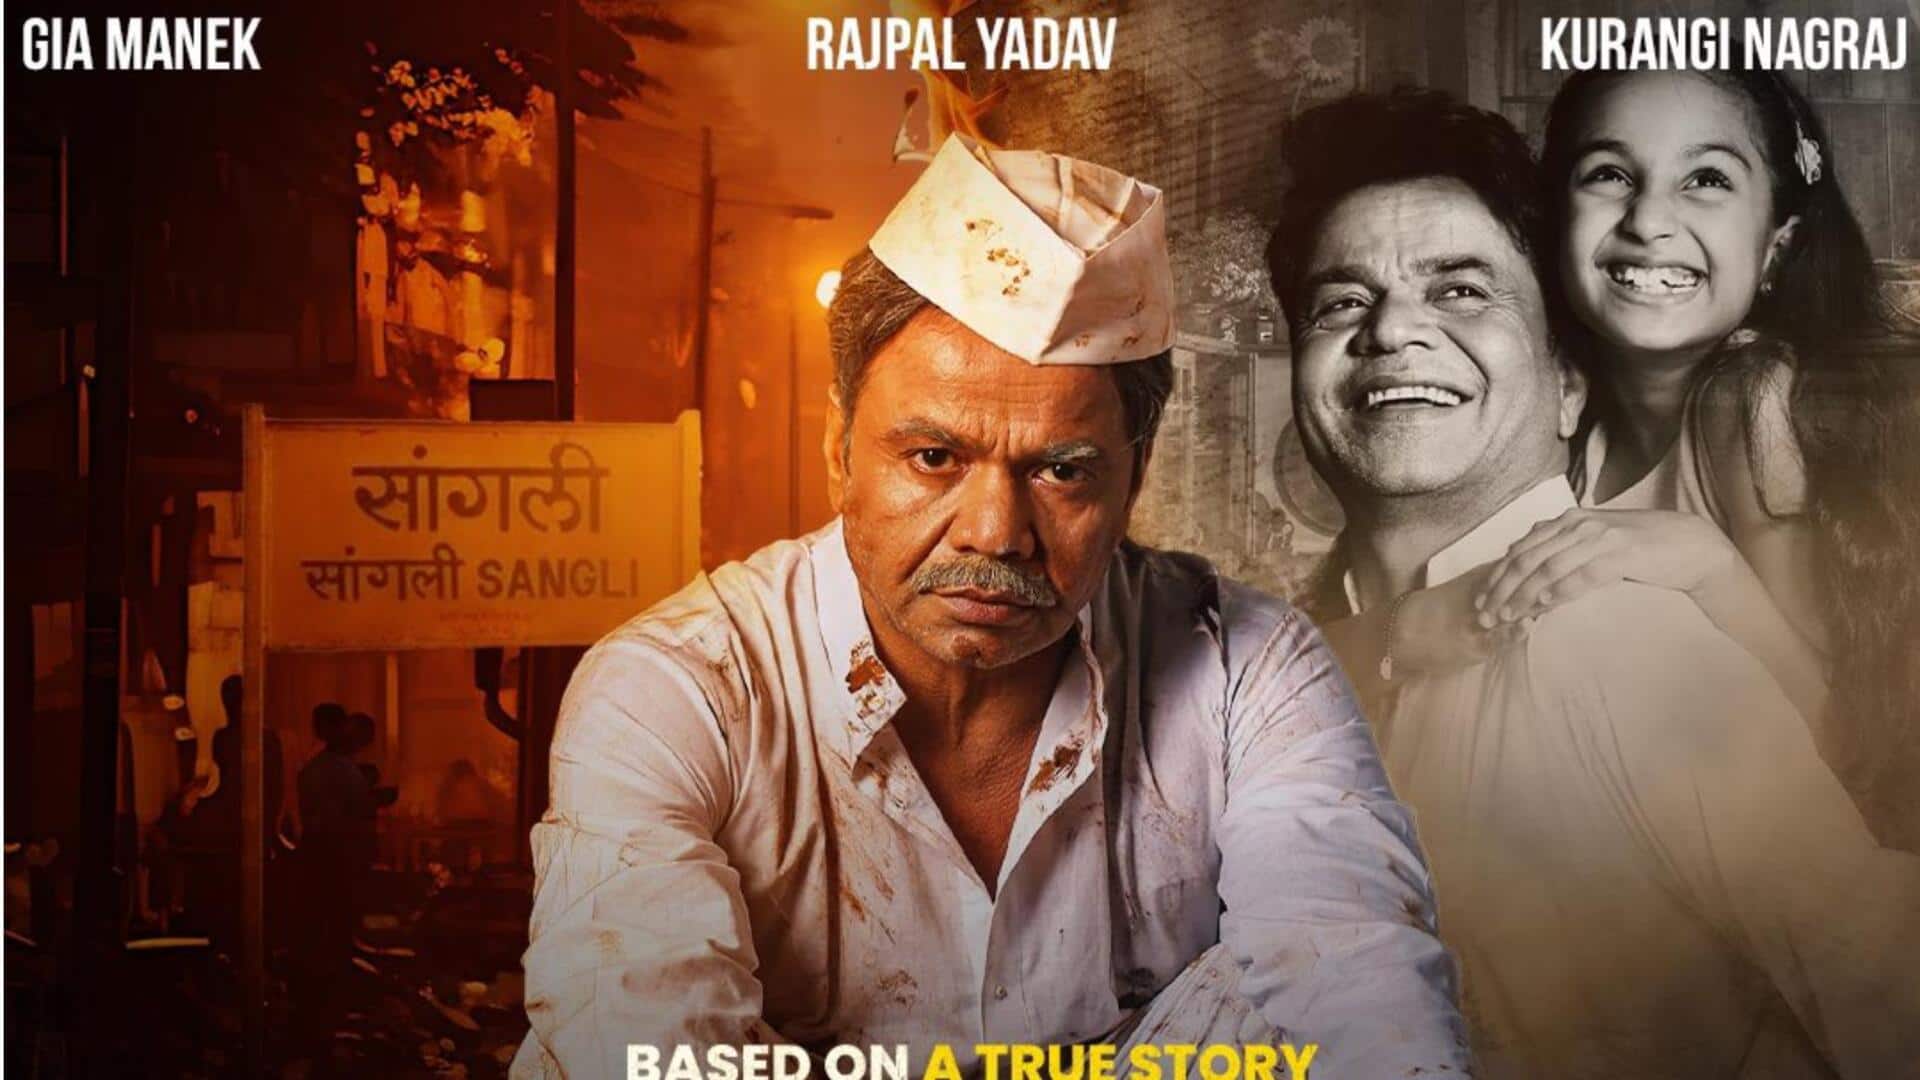 राजपाल यादव की 'काम चालू है' का ट्रेलर जारी, जानिए कब और कहां देख सकेंगे फिल्म 